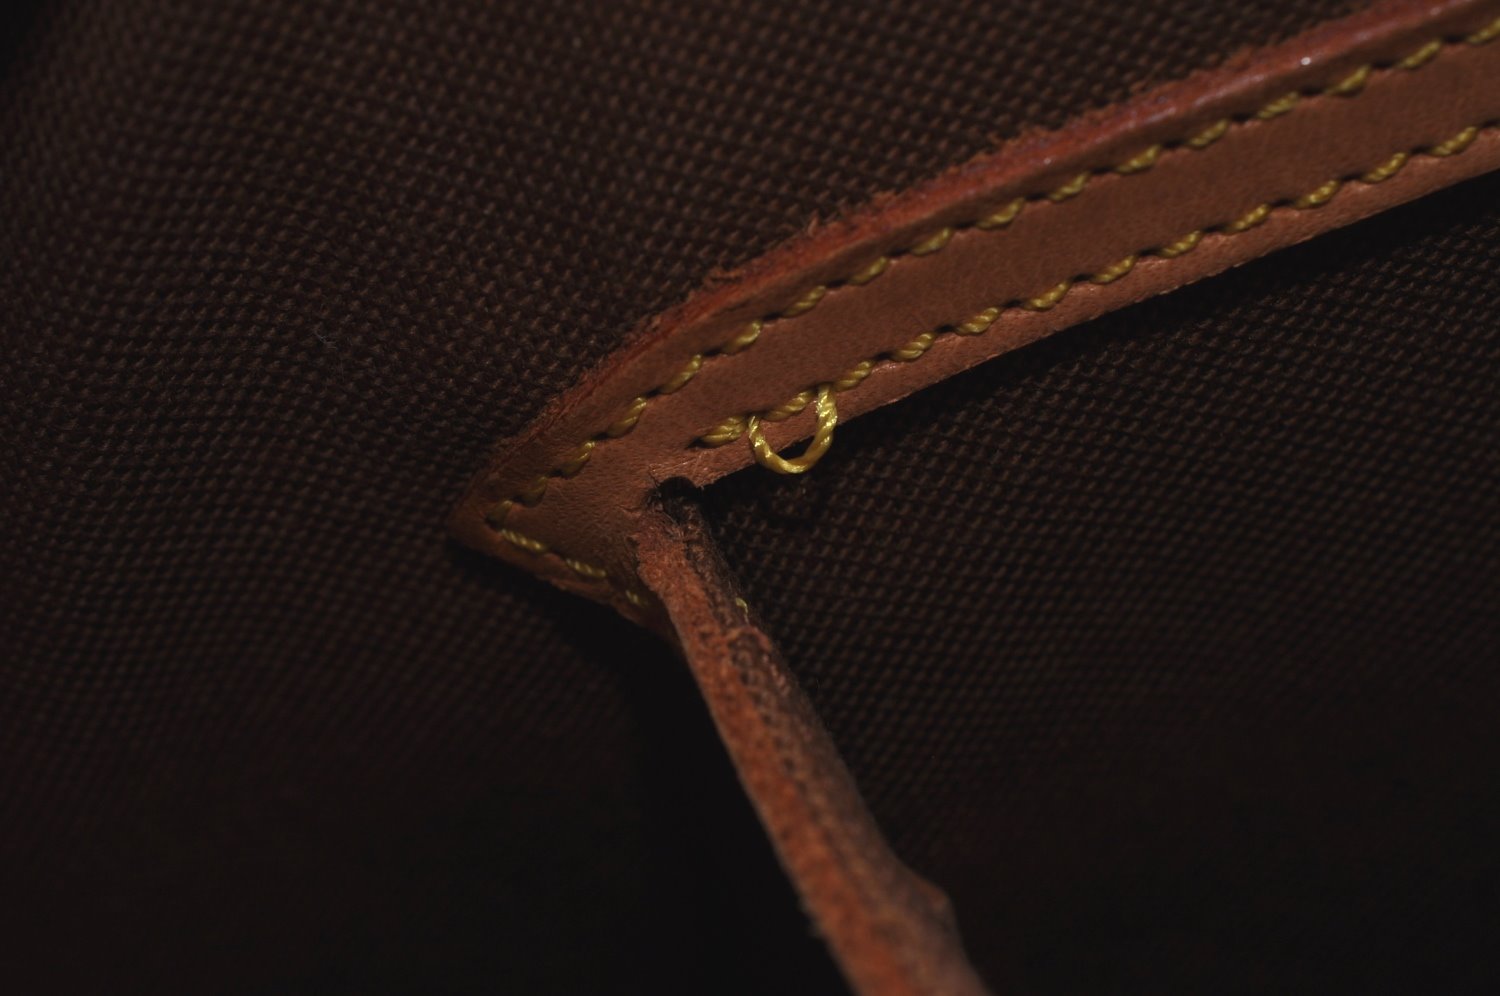 Authentic Louis Vuitton Monogram Alma Hand Bag Purse M51130 LV K9761